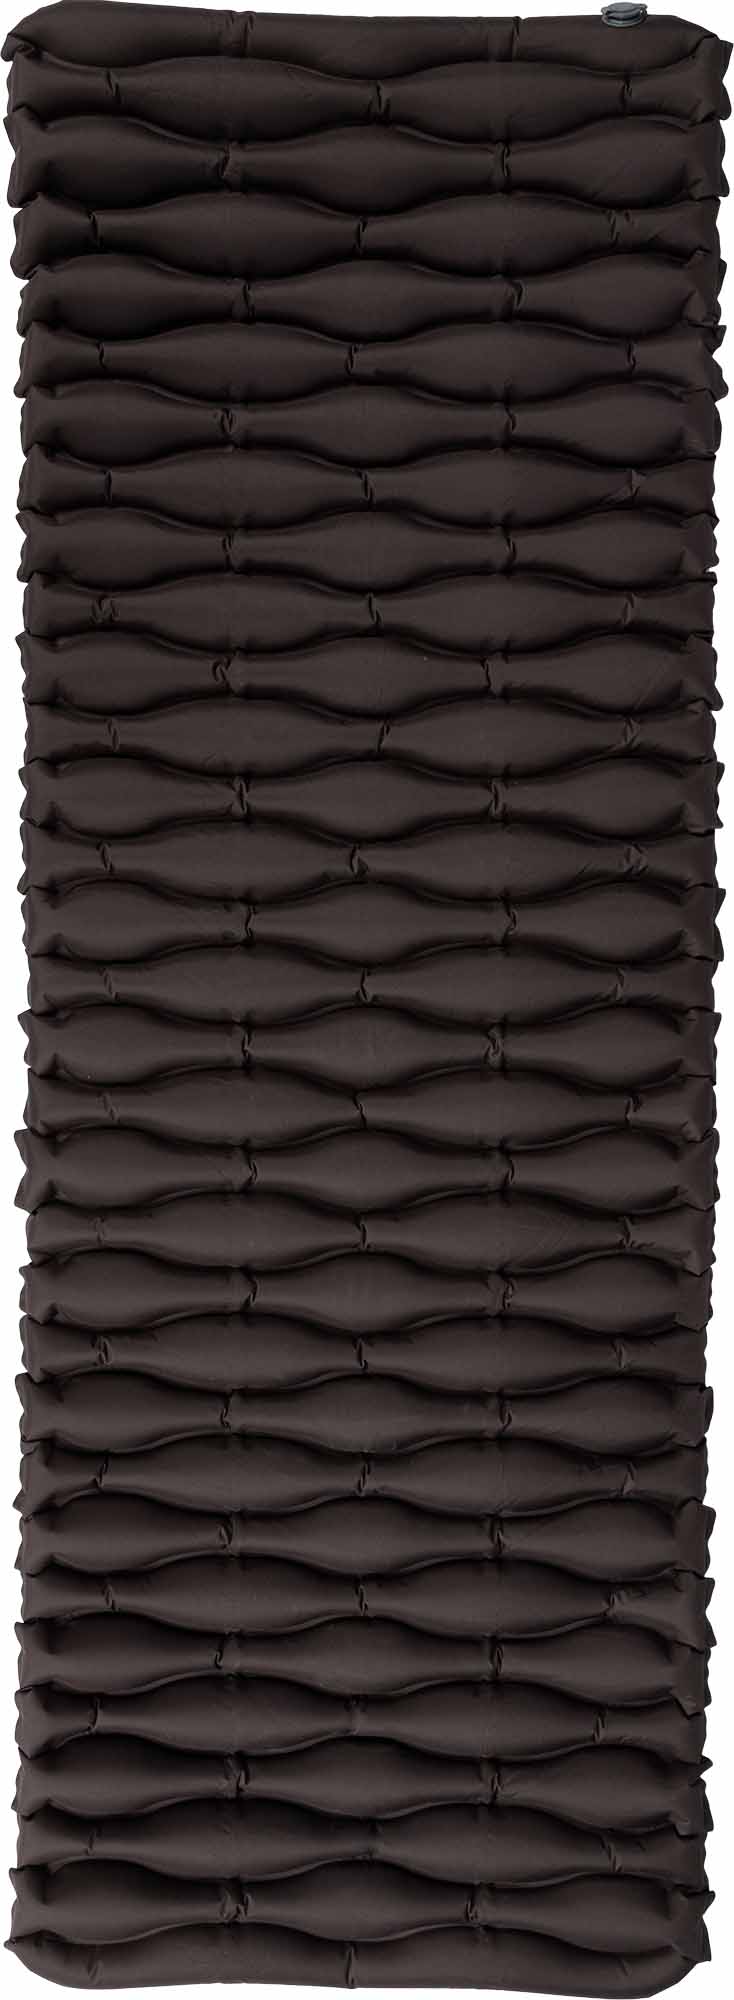 Nafukovací matrace s elastickým povrchem